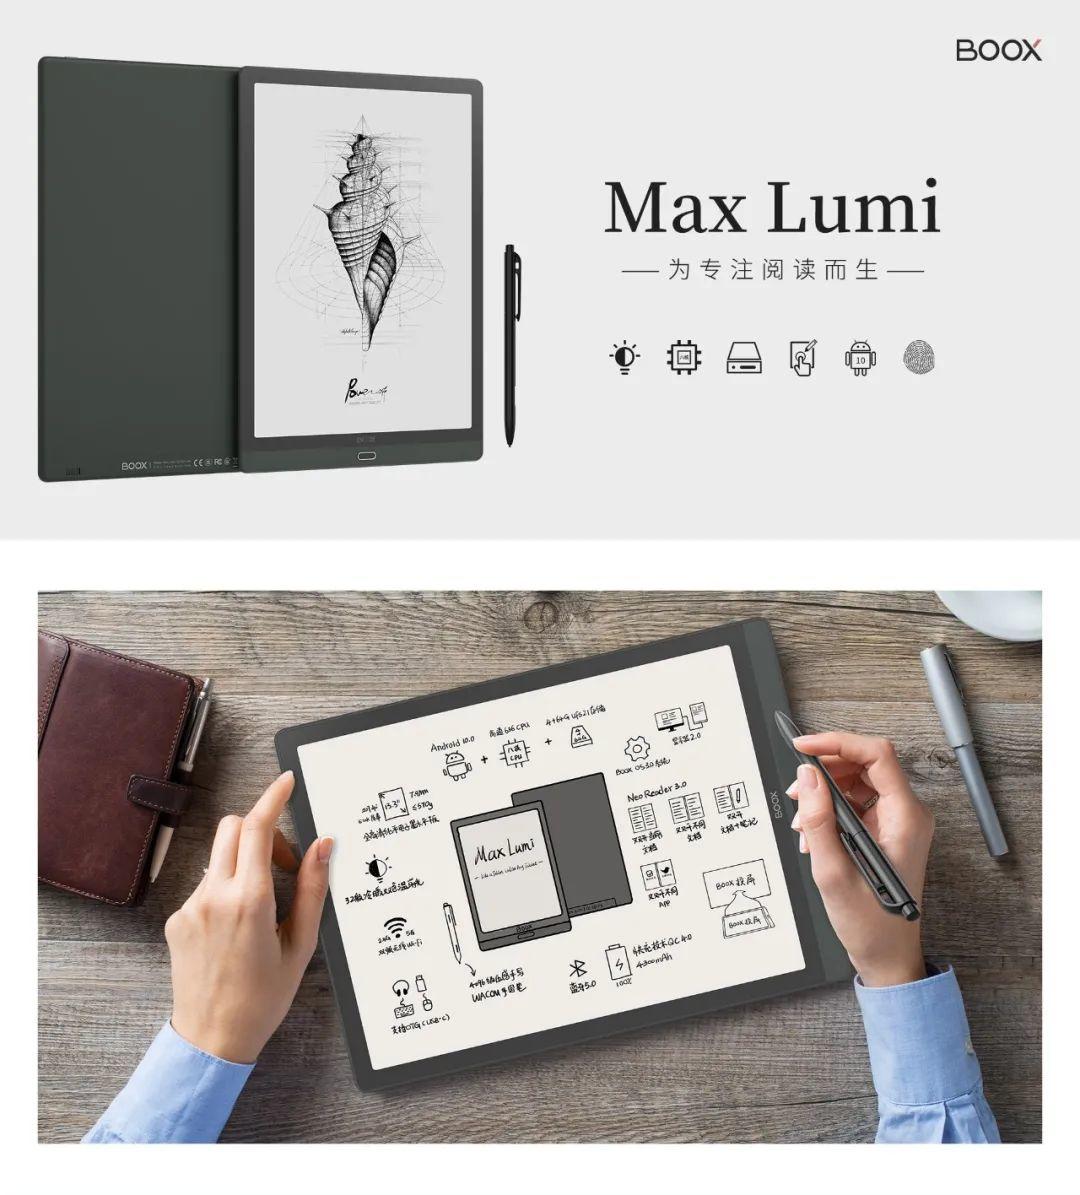 新品BOOX Max Lumi是款什么样的产品？多张图让你看到所有亮点！  boox onyx 文石 13.3寸 13.3寸大屏电子书 13.3寸带前光 max lumi lumi评测 lumi购买 lumi特点 lumi值不值得买 lumi京东 lumi预售 第1张